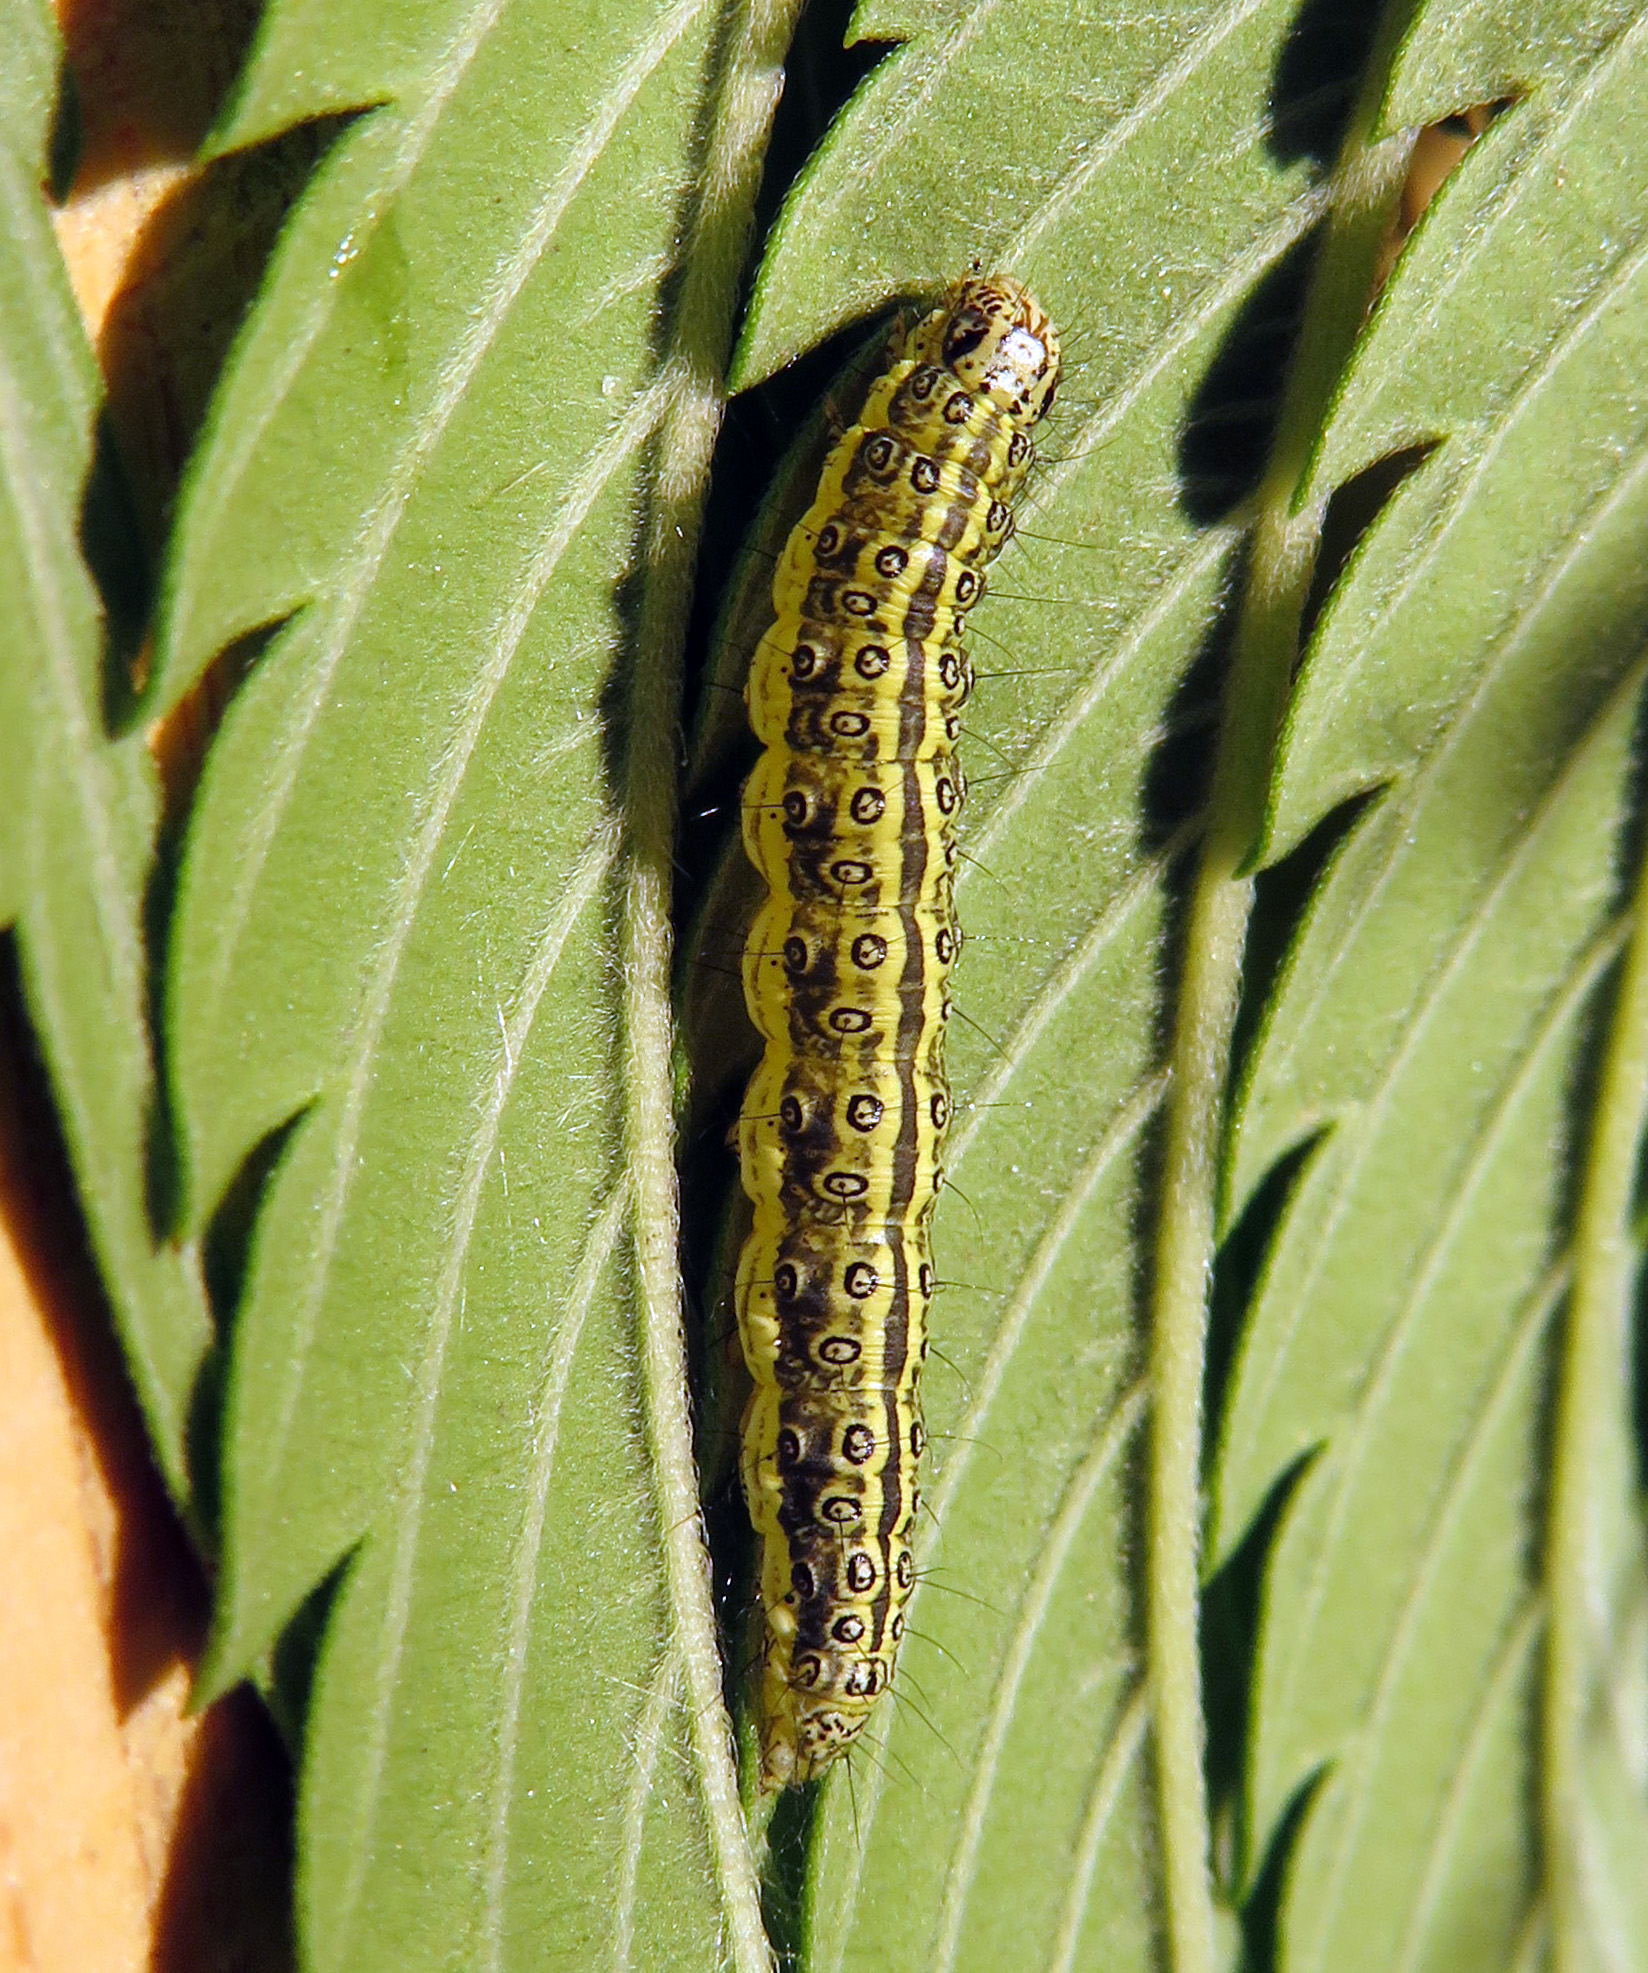 beet webworm on hemp leaf